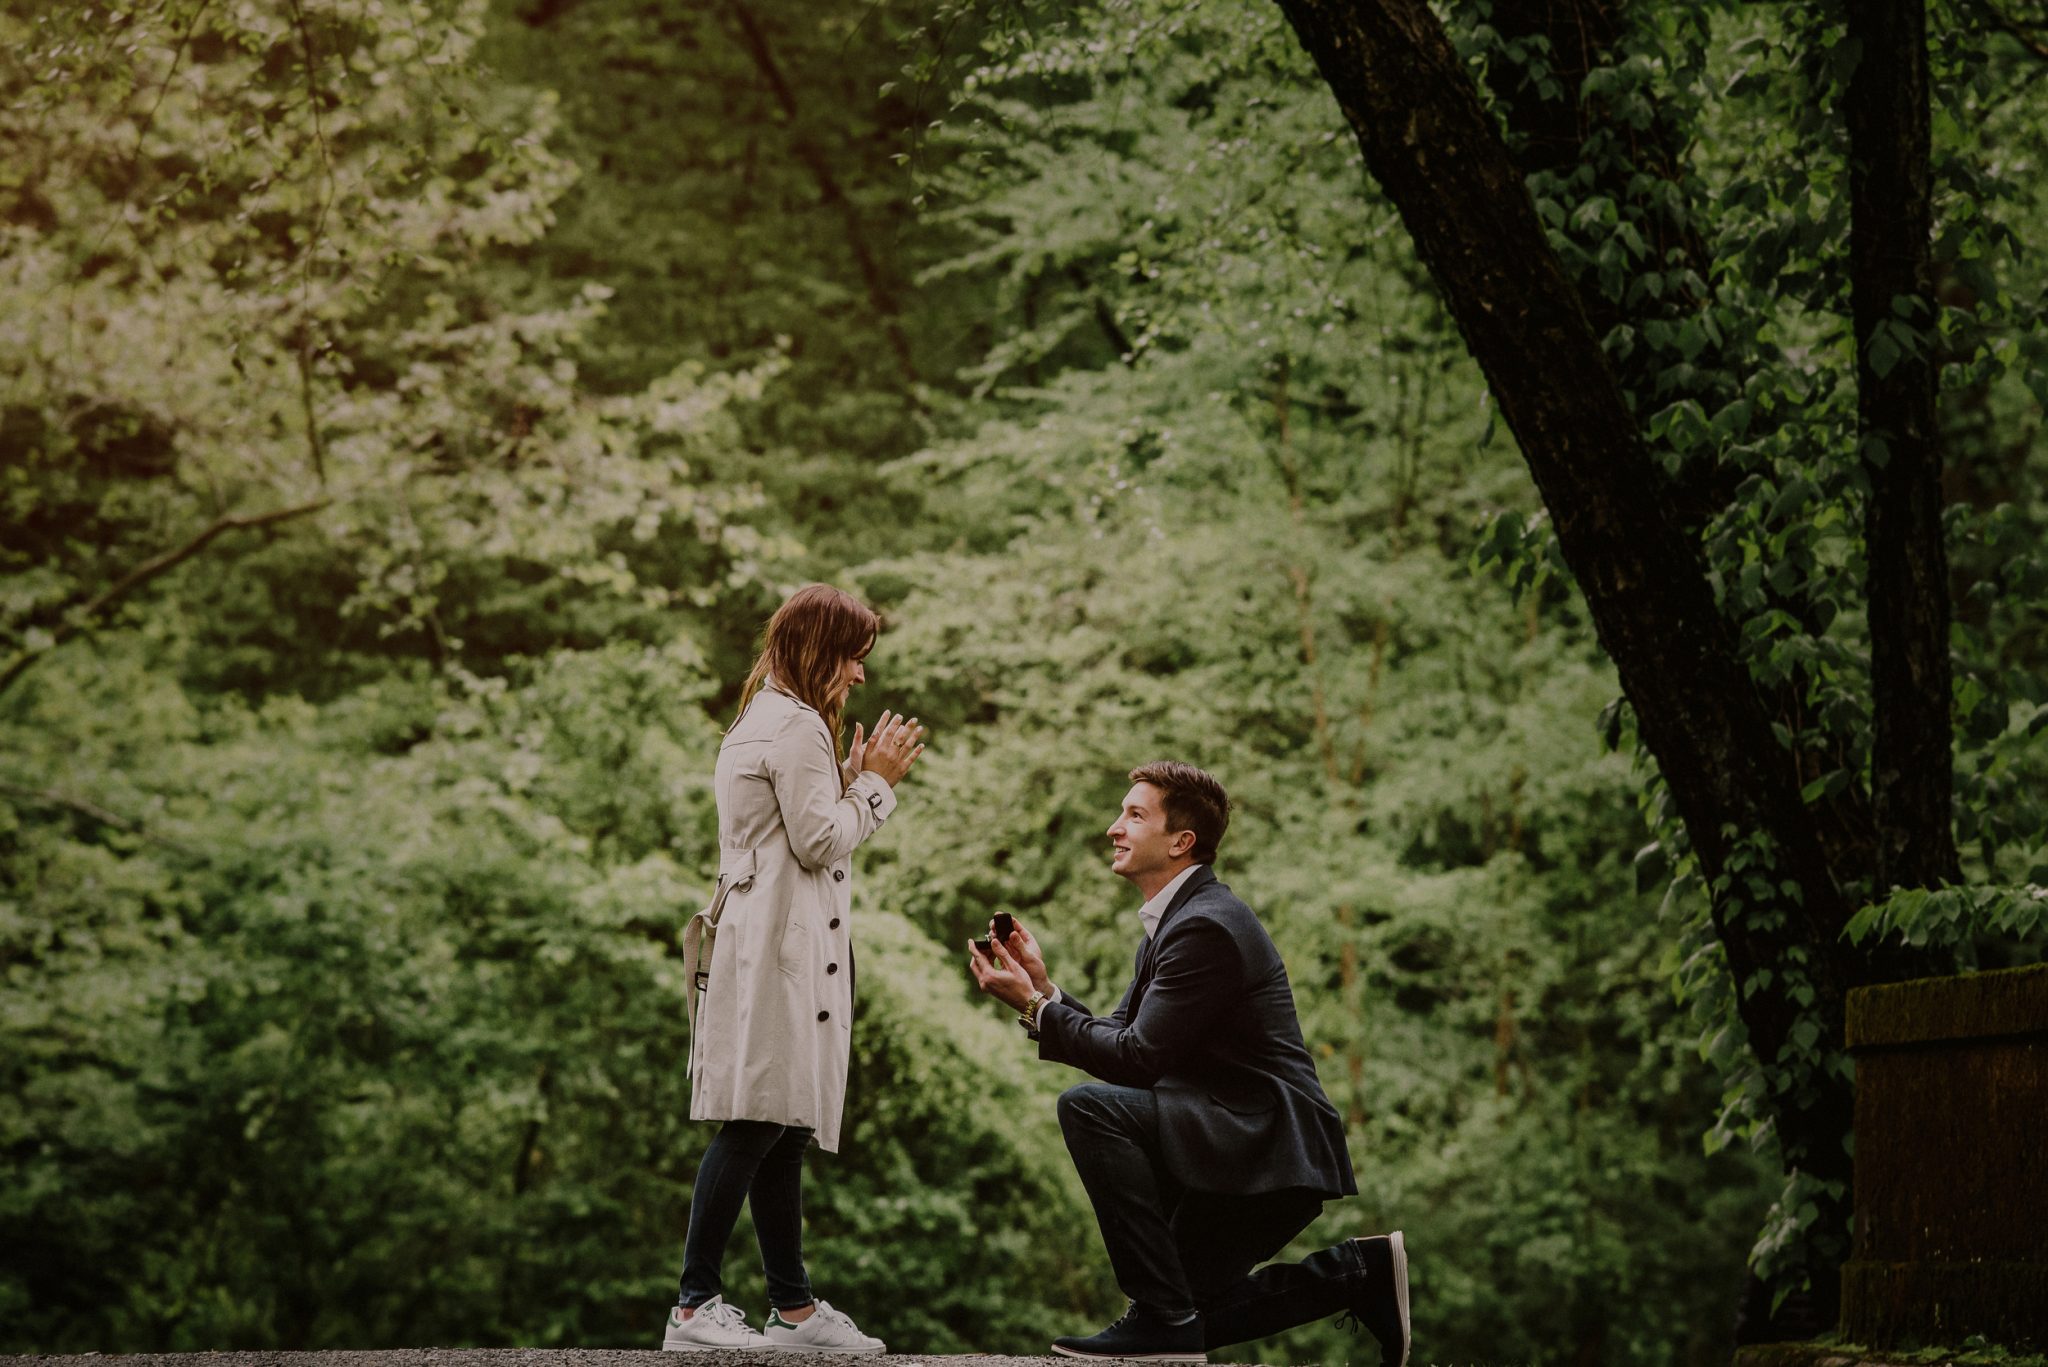 surprise proposal photos at NJ park